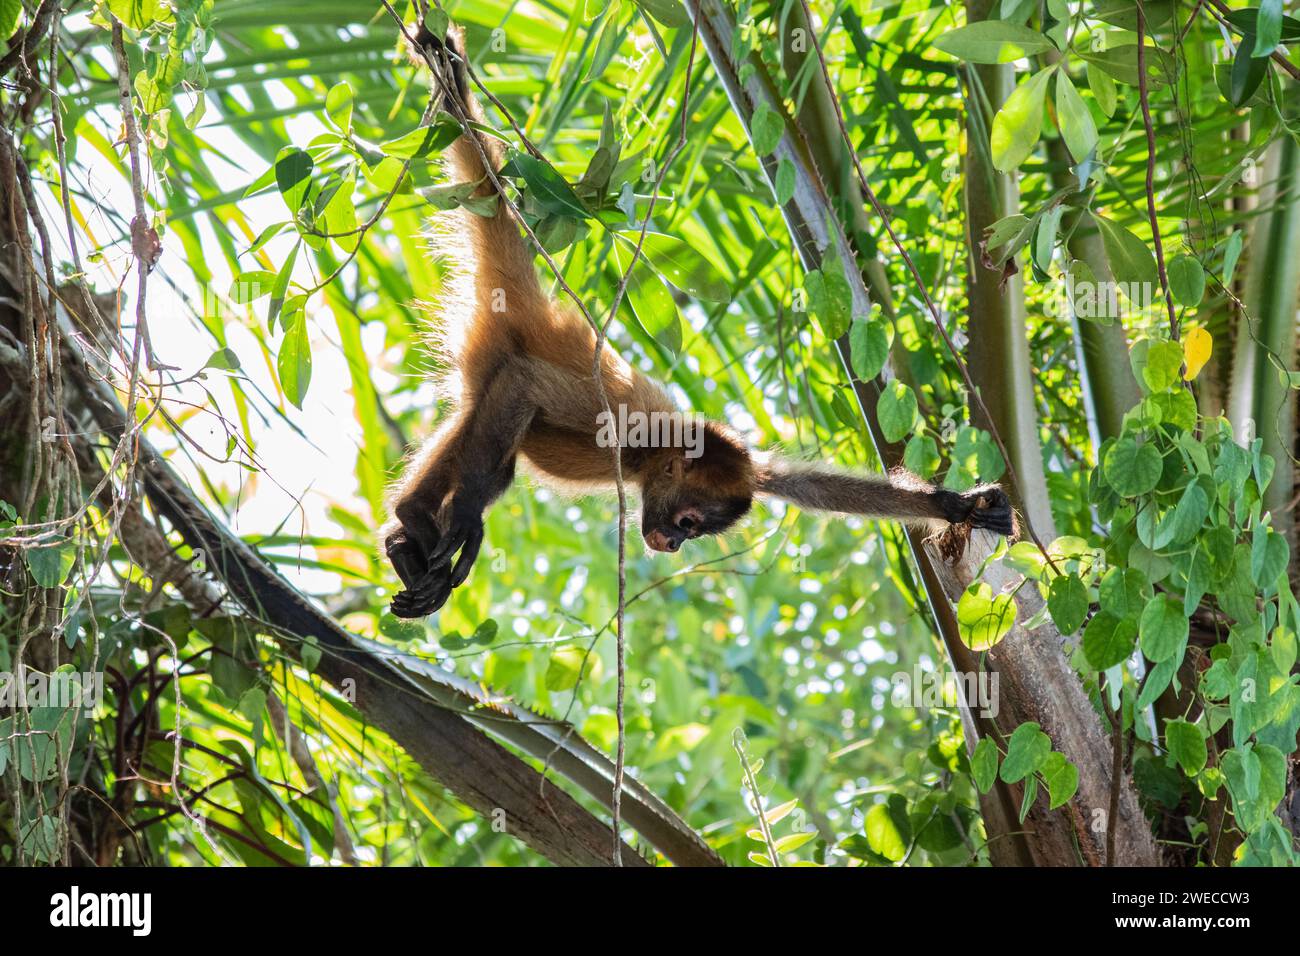 Tesori di Tortuguero: Giocose scimmie ragno che si muovono attraverso le cime degli alberi, aggiungendo fascino al vivace Parco Nazionale Tortuguero della Costa Rica. Foto Stock